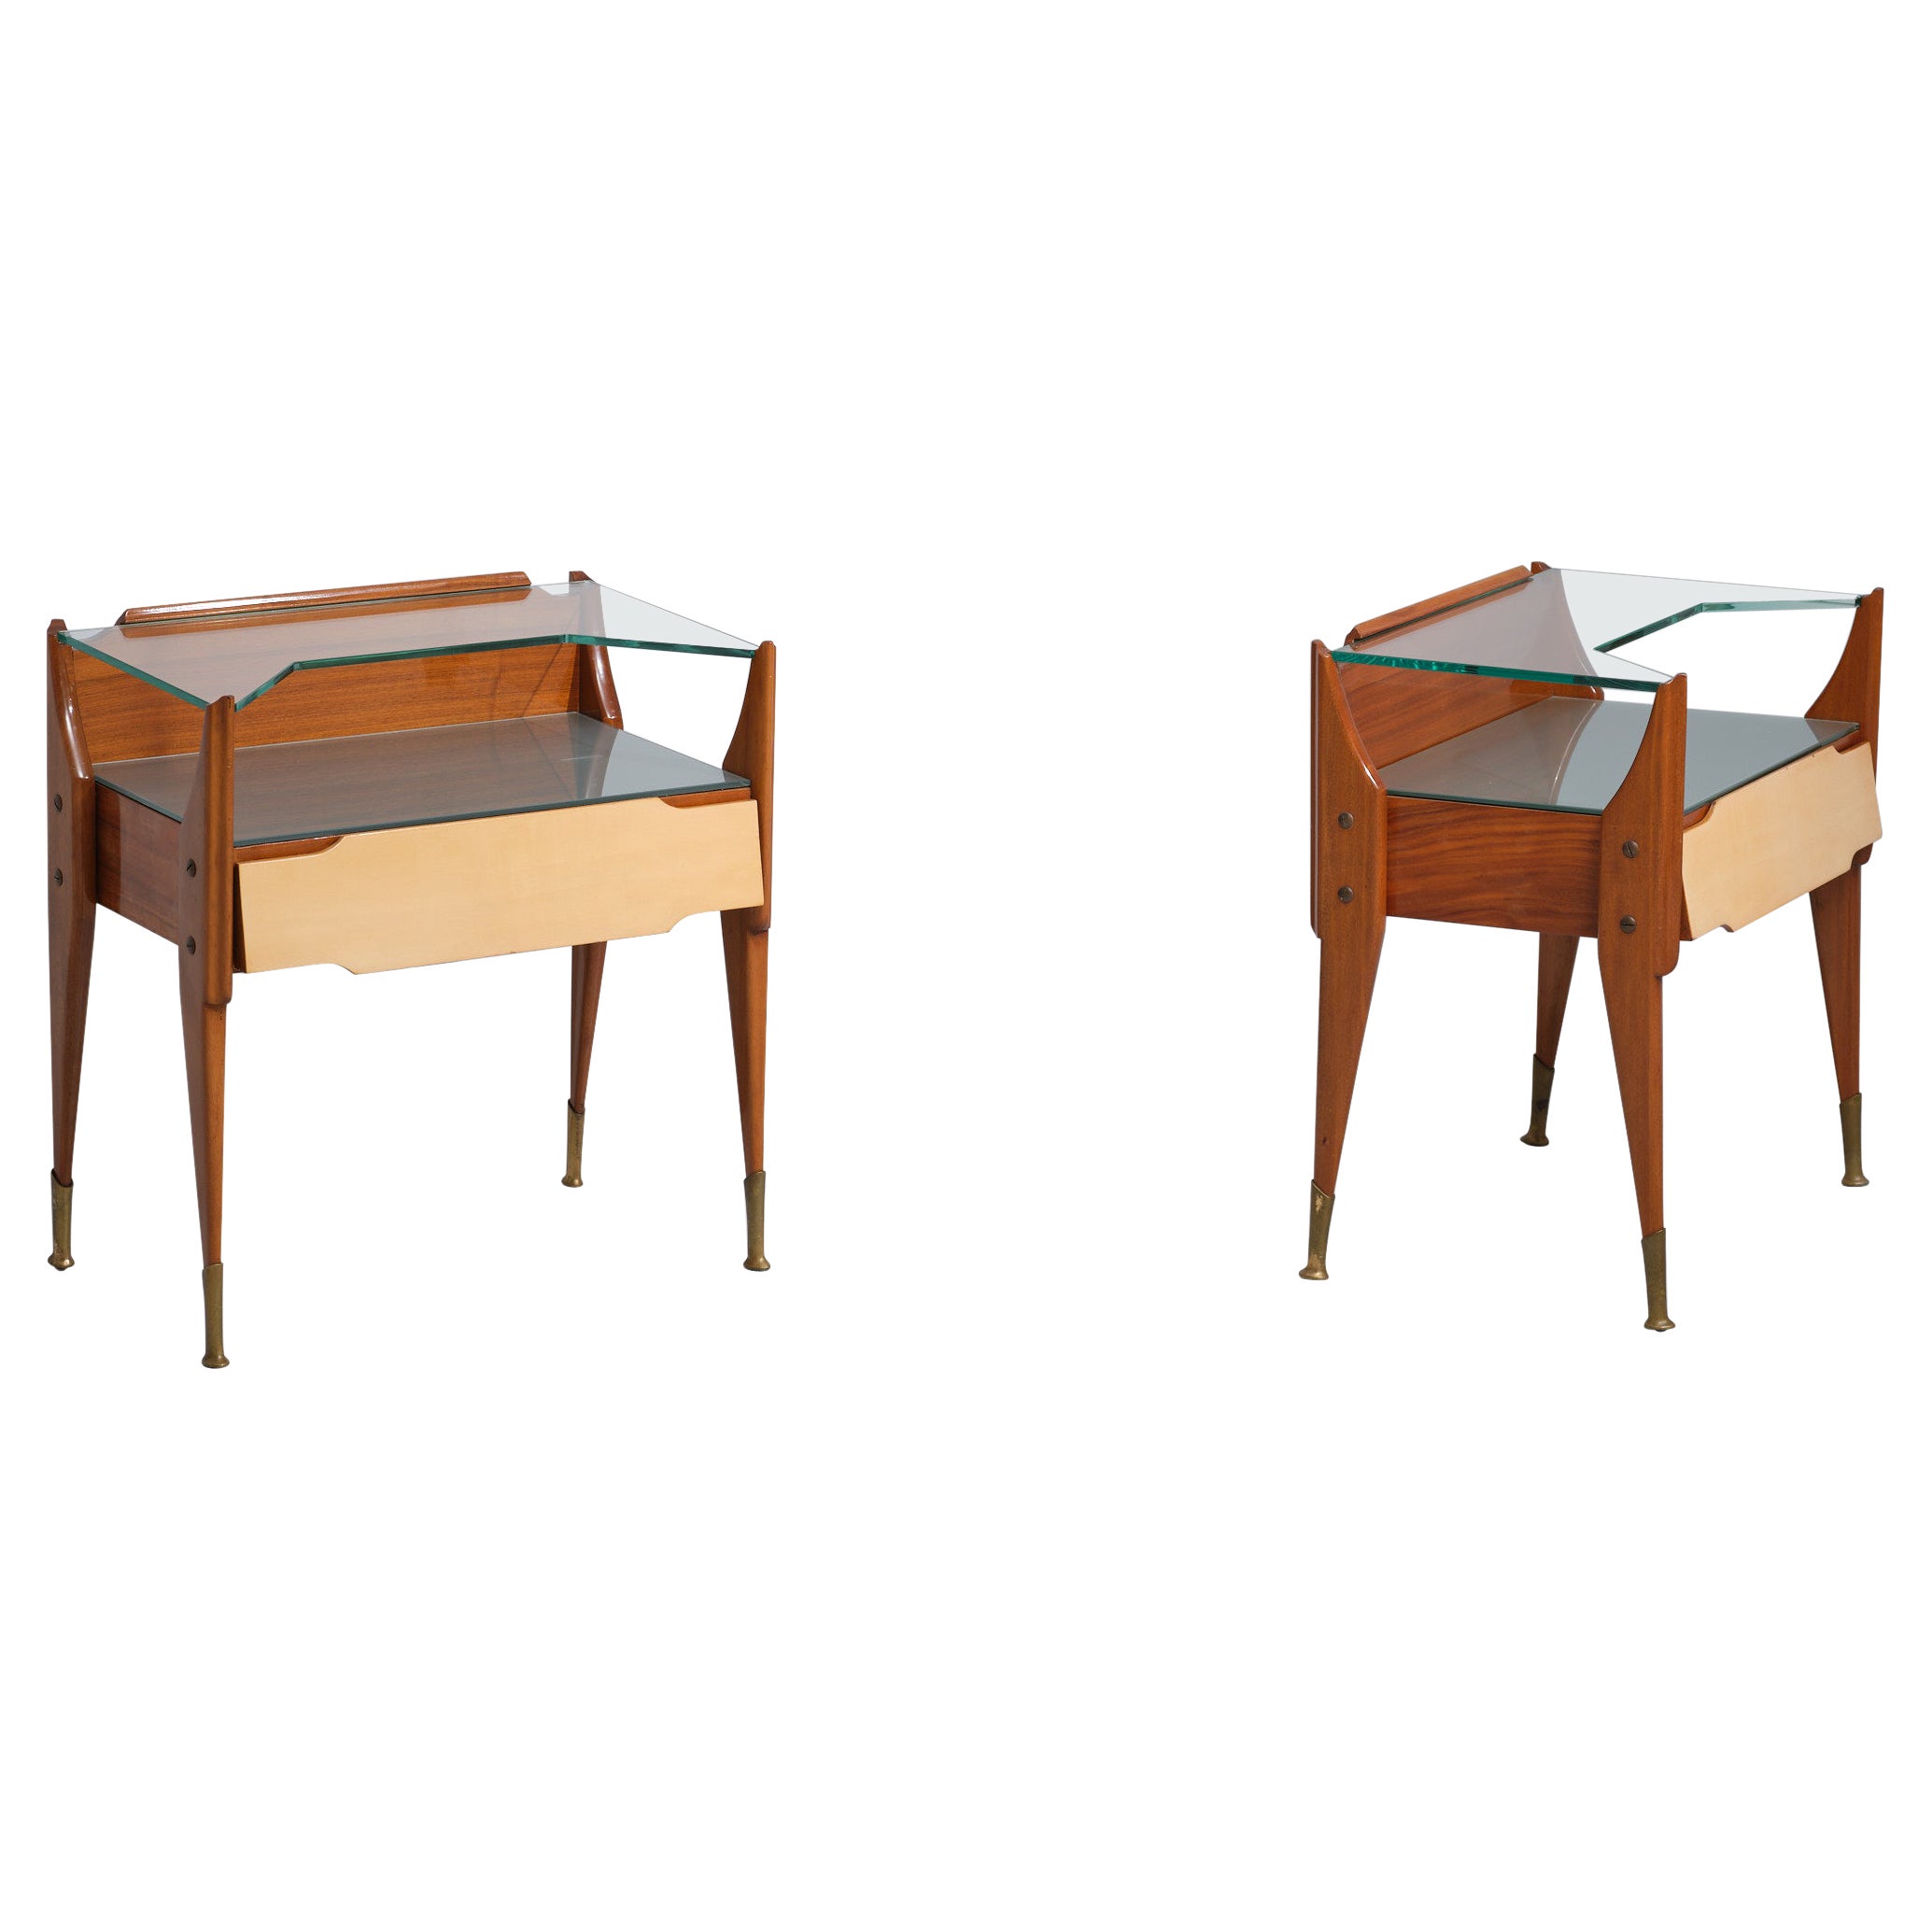 Exquisite Italian Craftsmanship: Vintage Teak Wood Bedside Tables For Sale